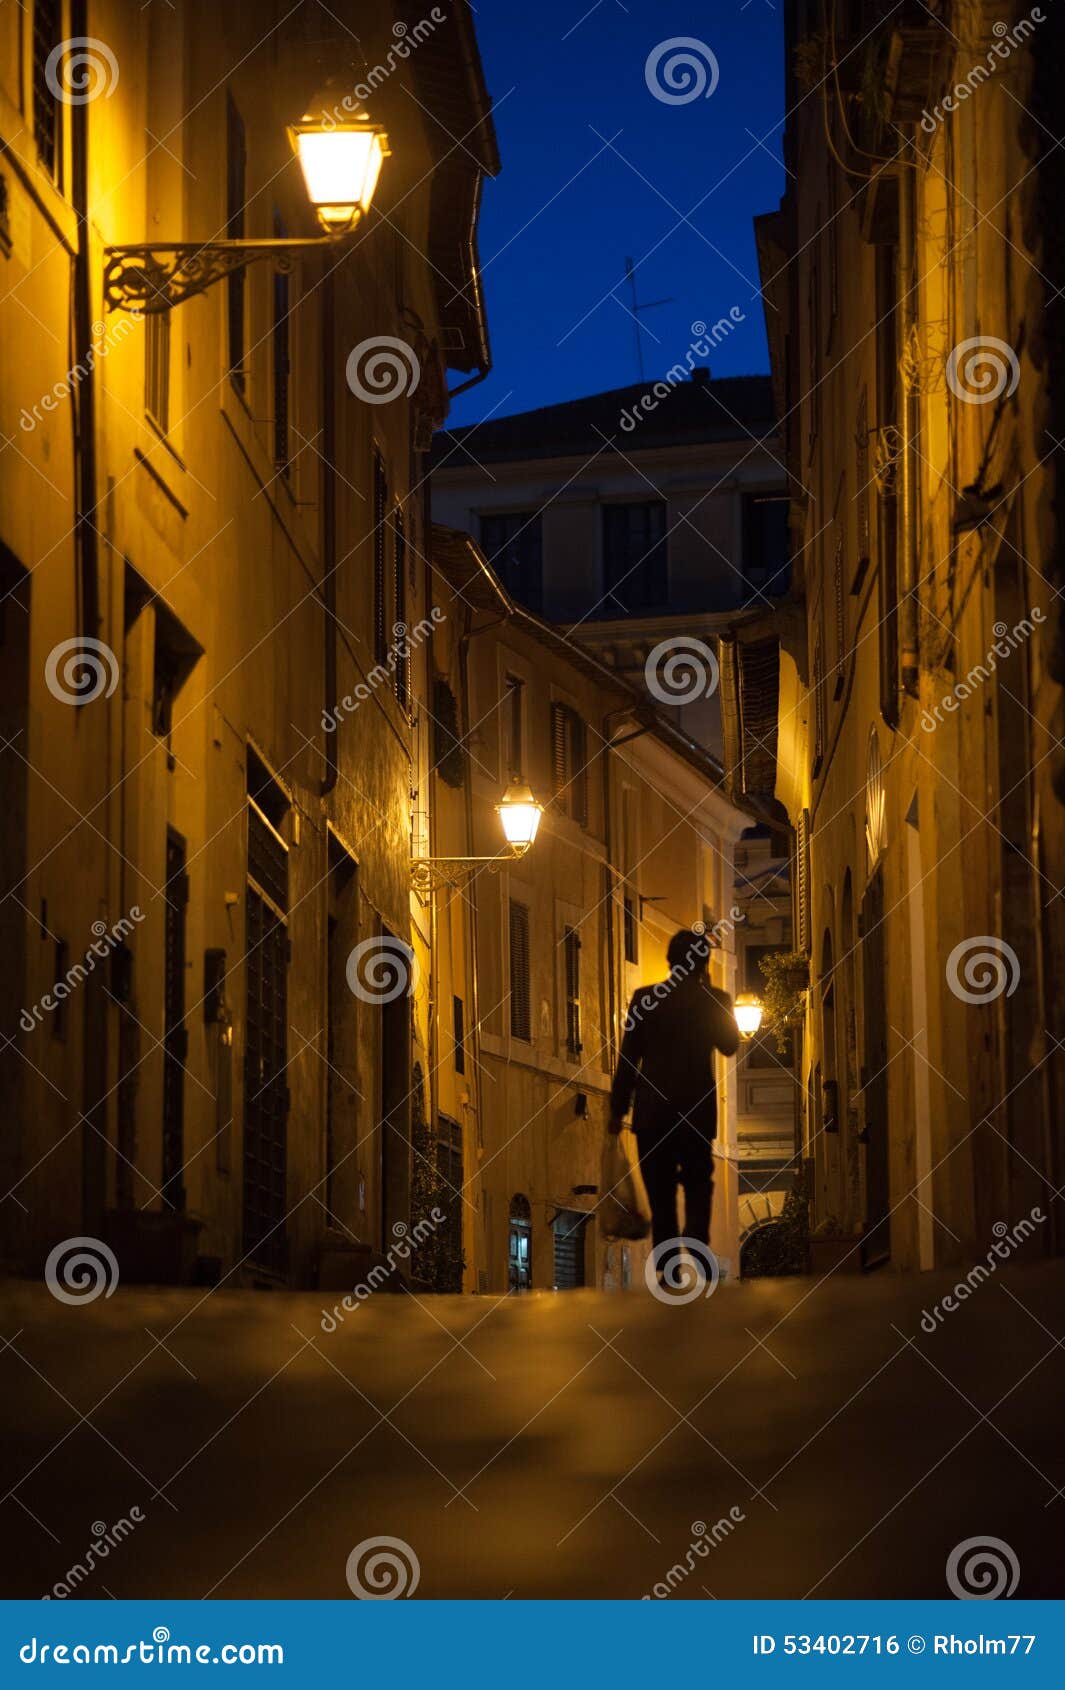 narrow streets of rome